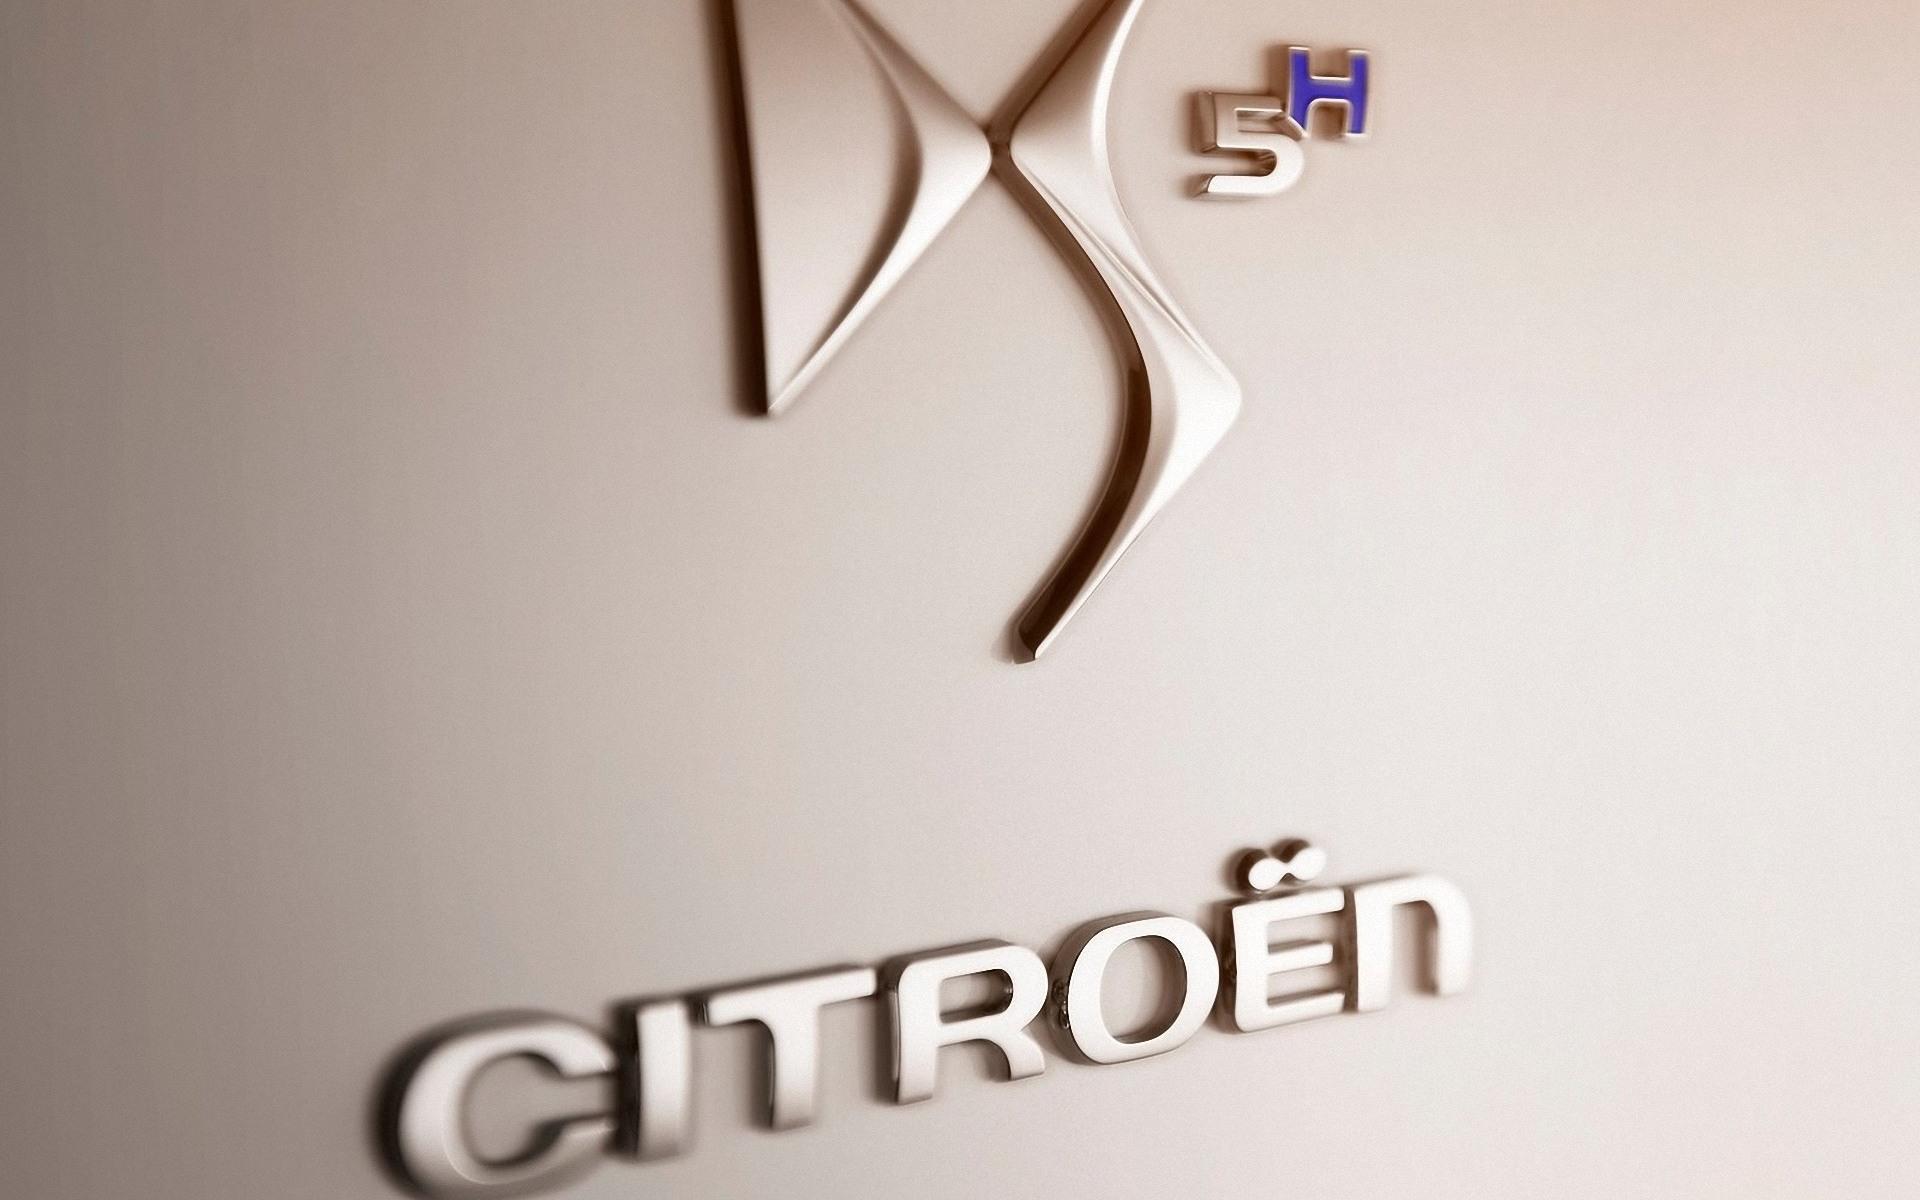 Citroen DS5 2012 logo 1920x1200 Wallpaper, Citroen DS5 1920x1200